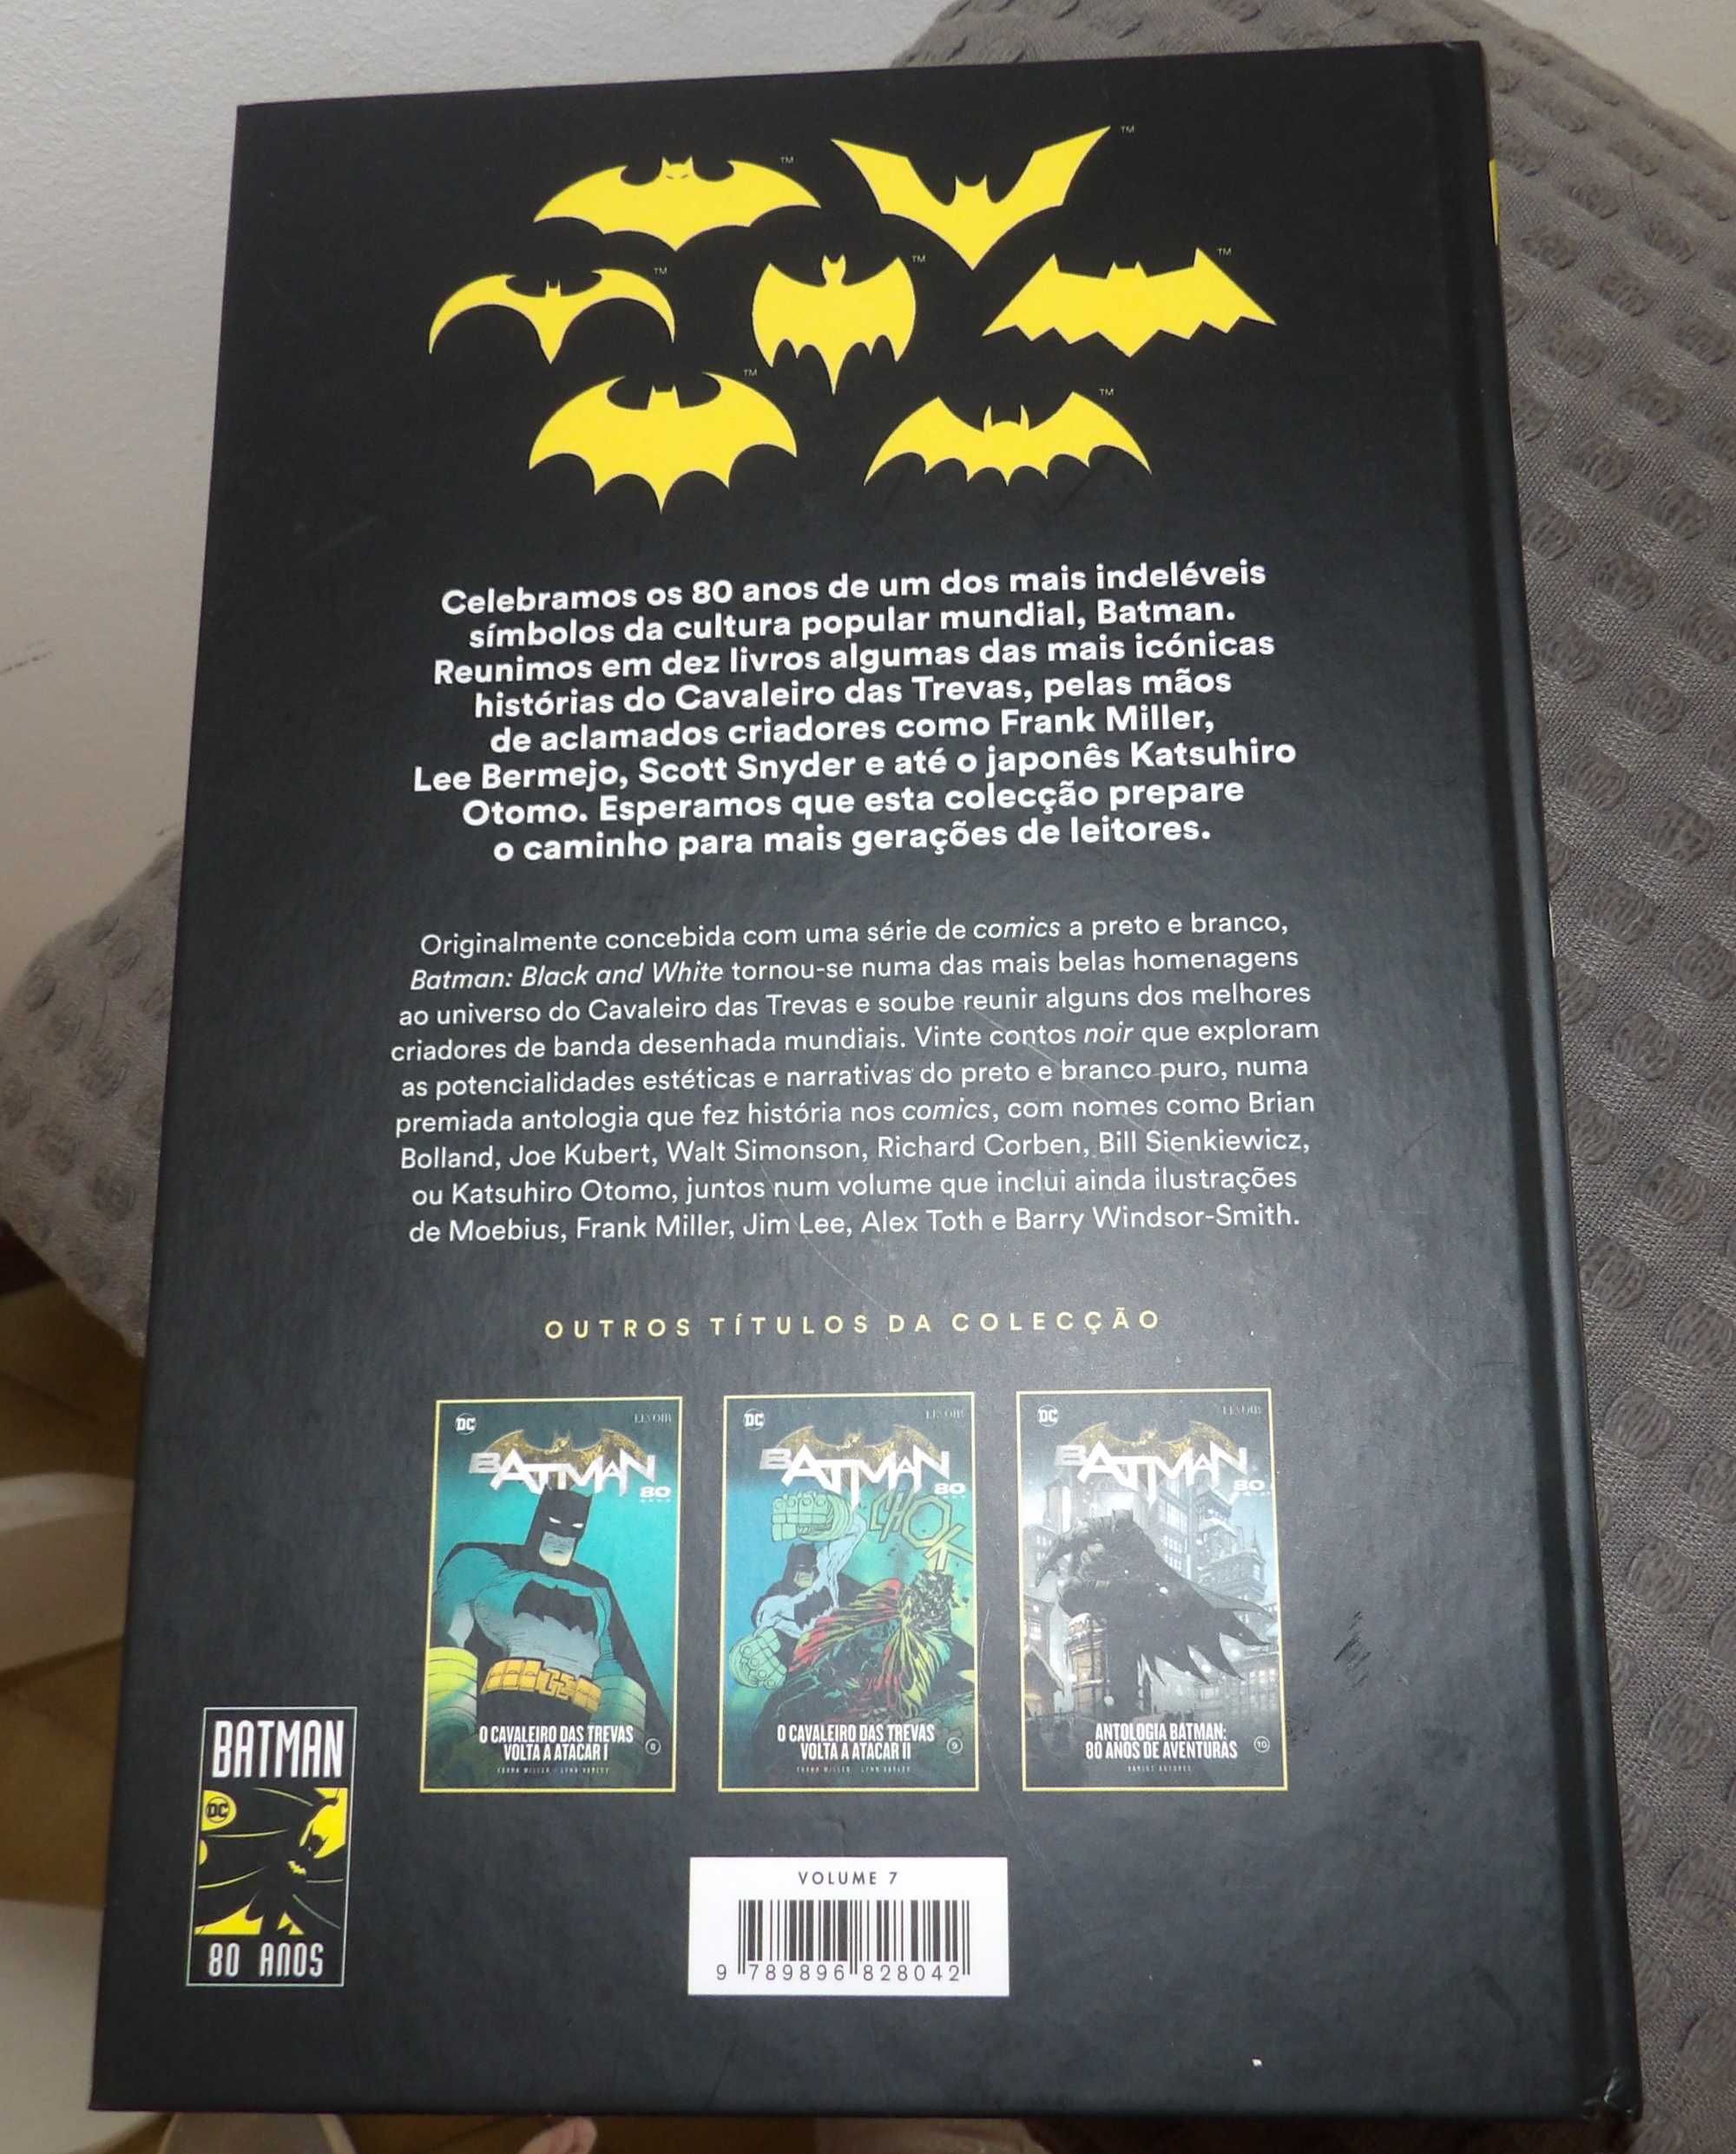 DC comics: Batman 80 anos